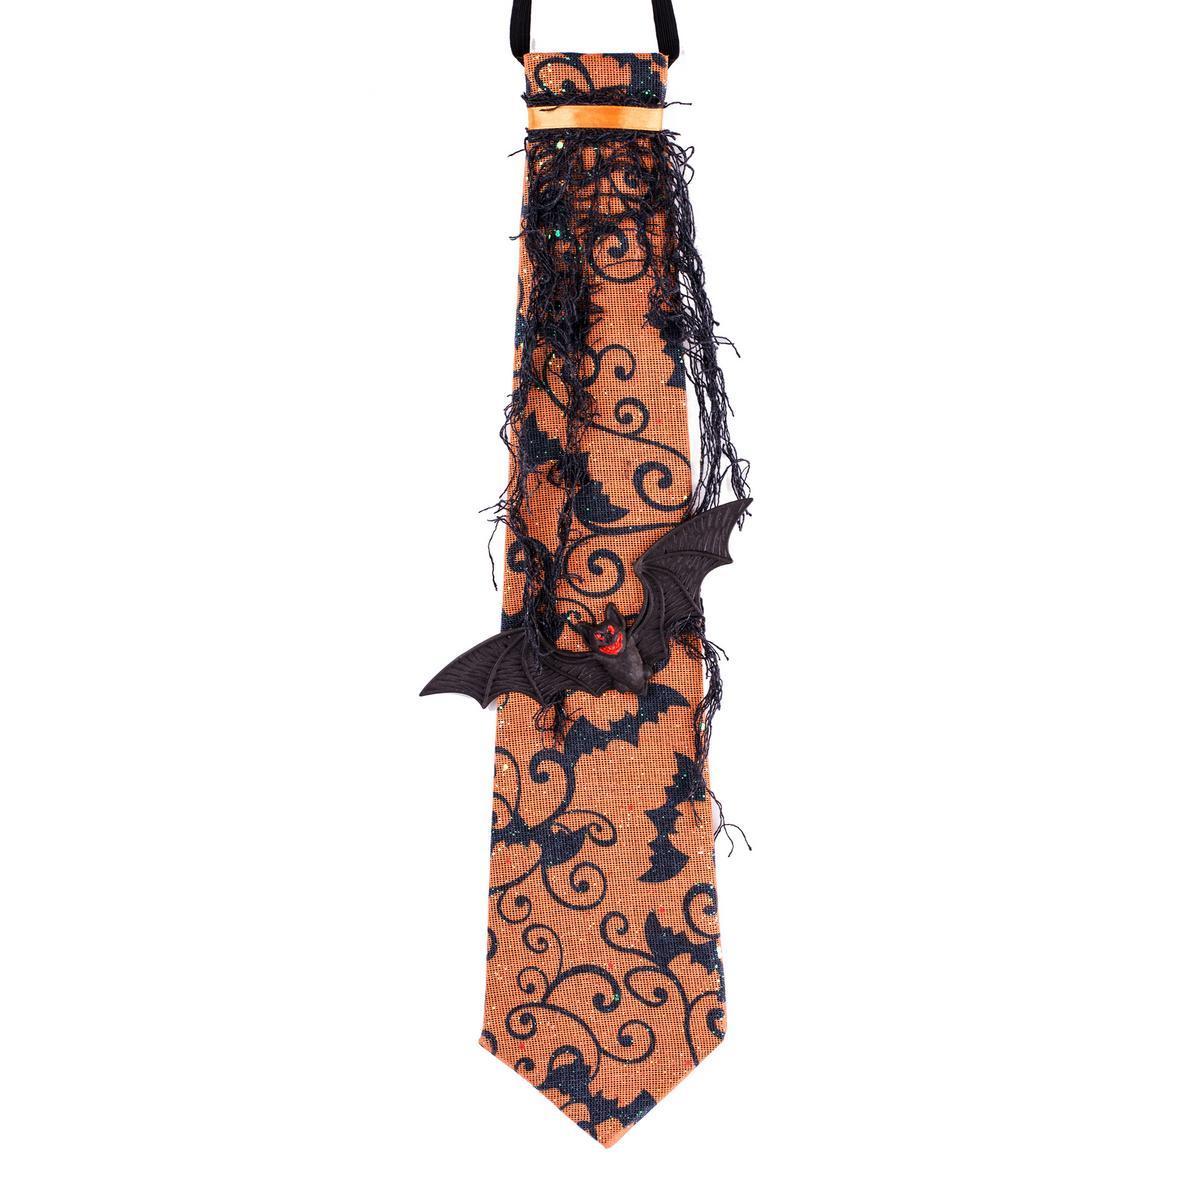 Cravate Halloween - 1,5 x 11 x H 65 cm - Tissu, plastique et papier - Noir